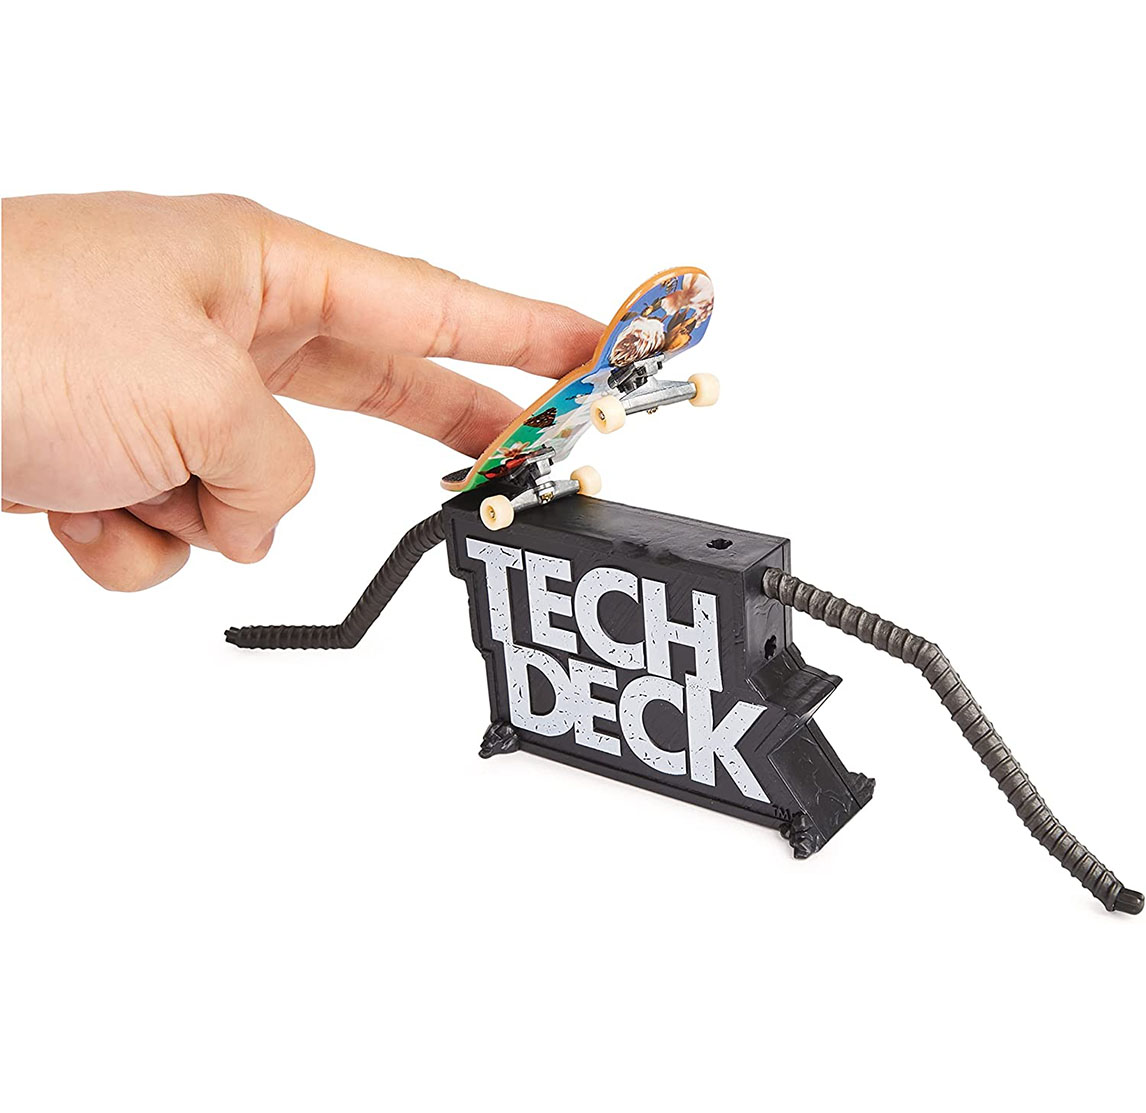 tech deck pack 2 con accesorio surtido( spin master 6061574)